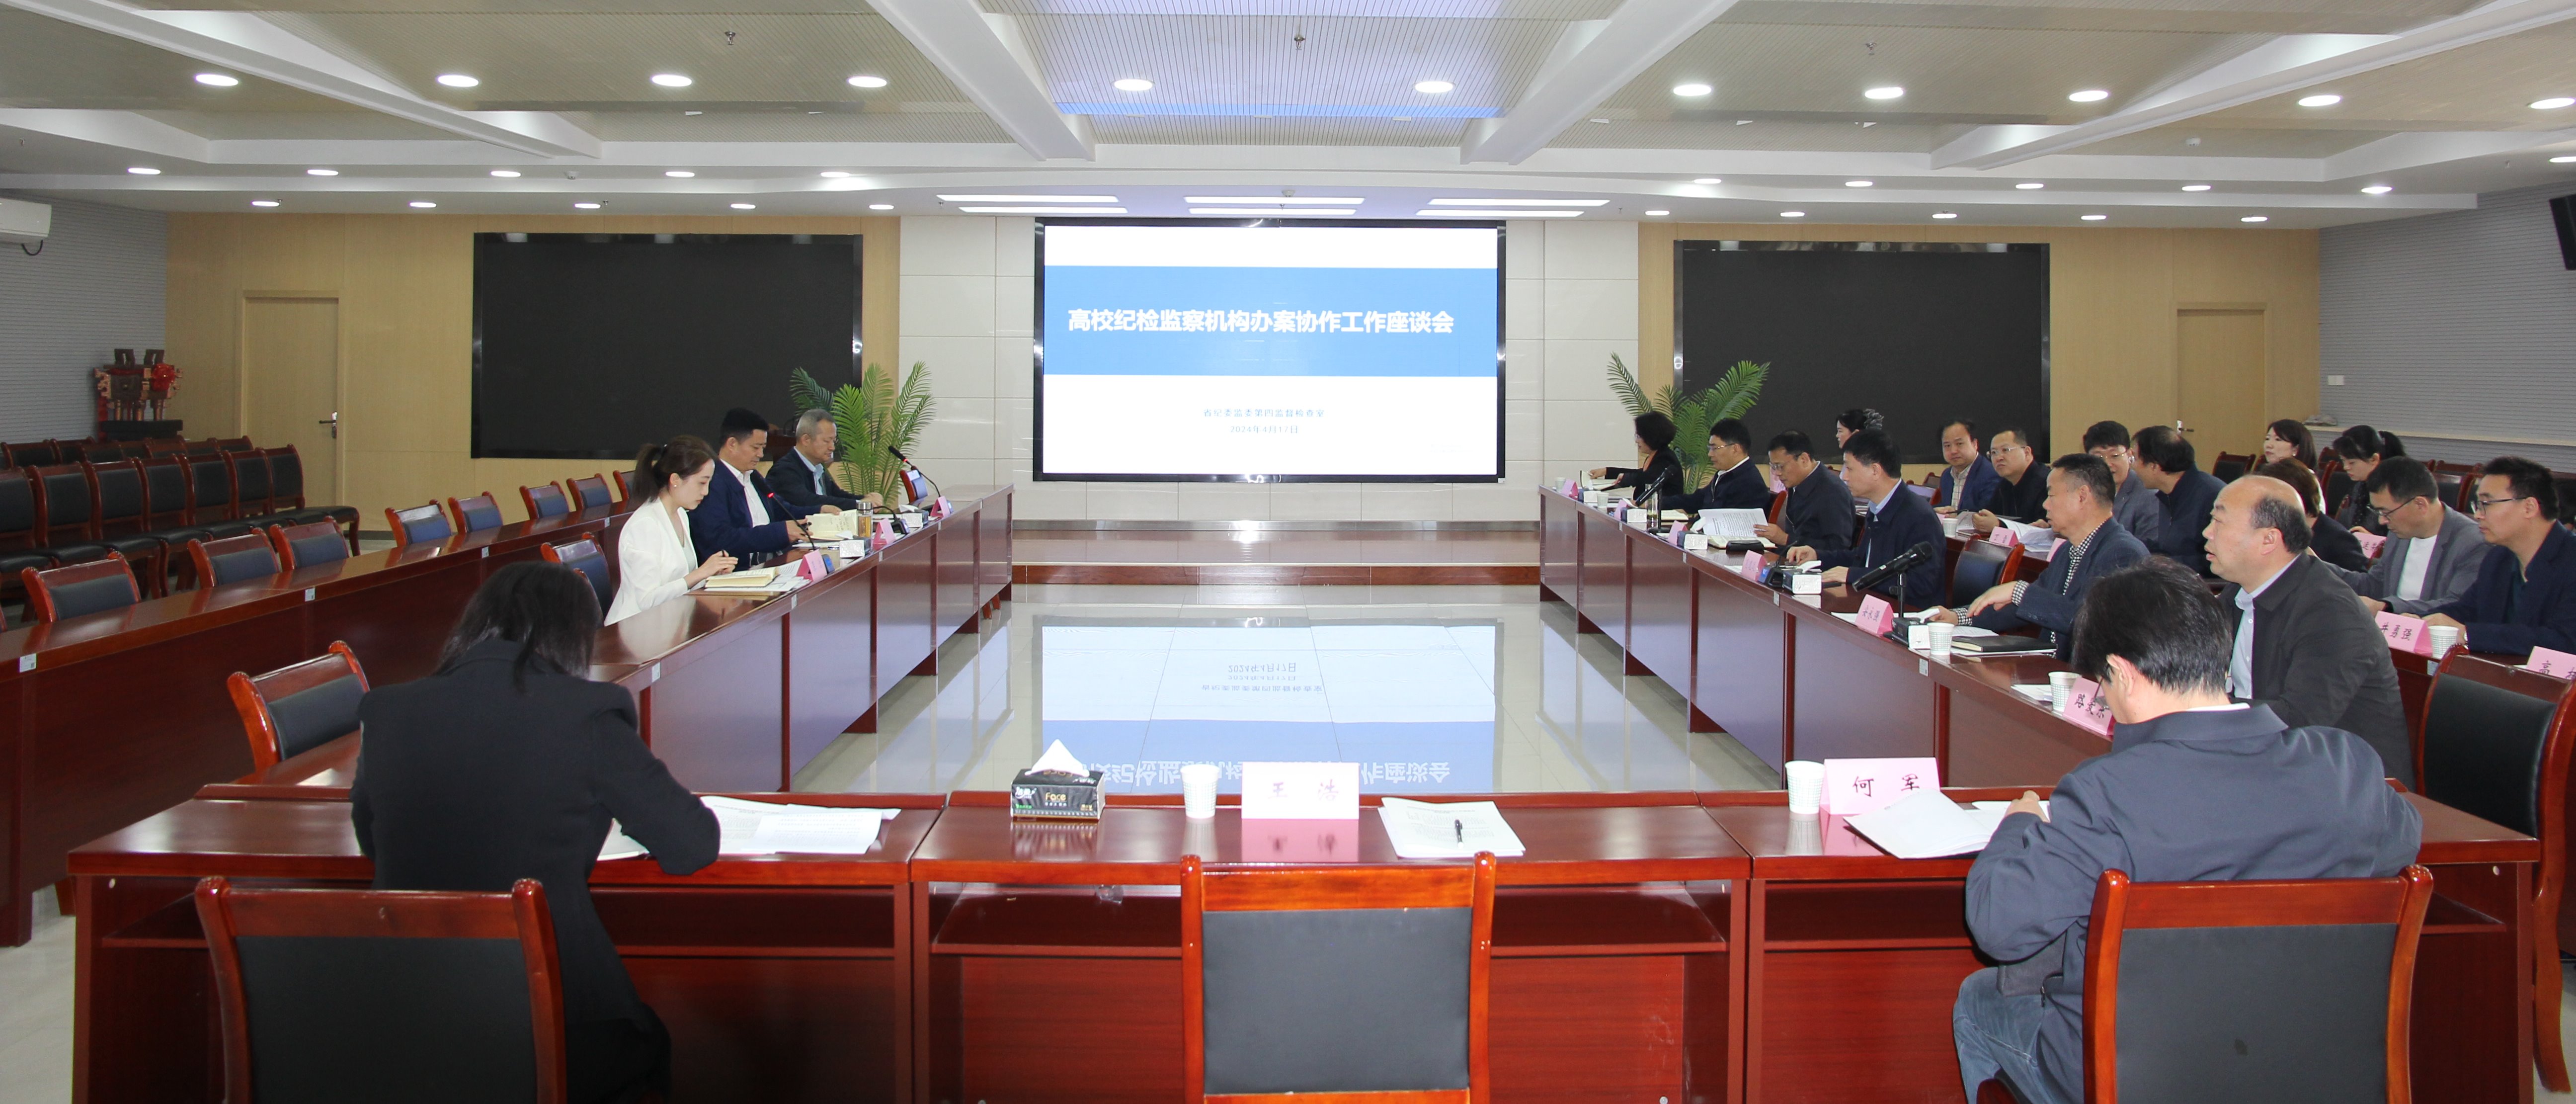 陕西省高校纪检监察机构第二办案协作区工作座谈会在欧宝(中国)有限公司举办